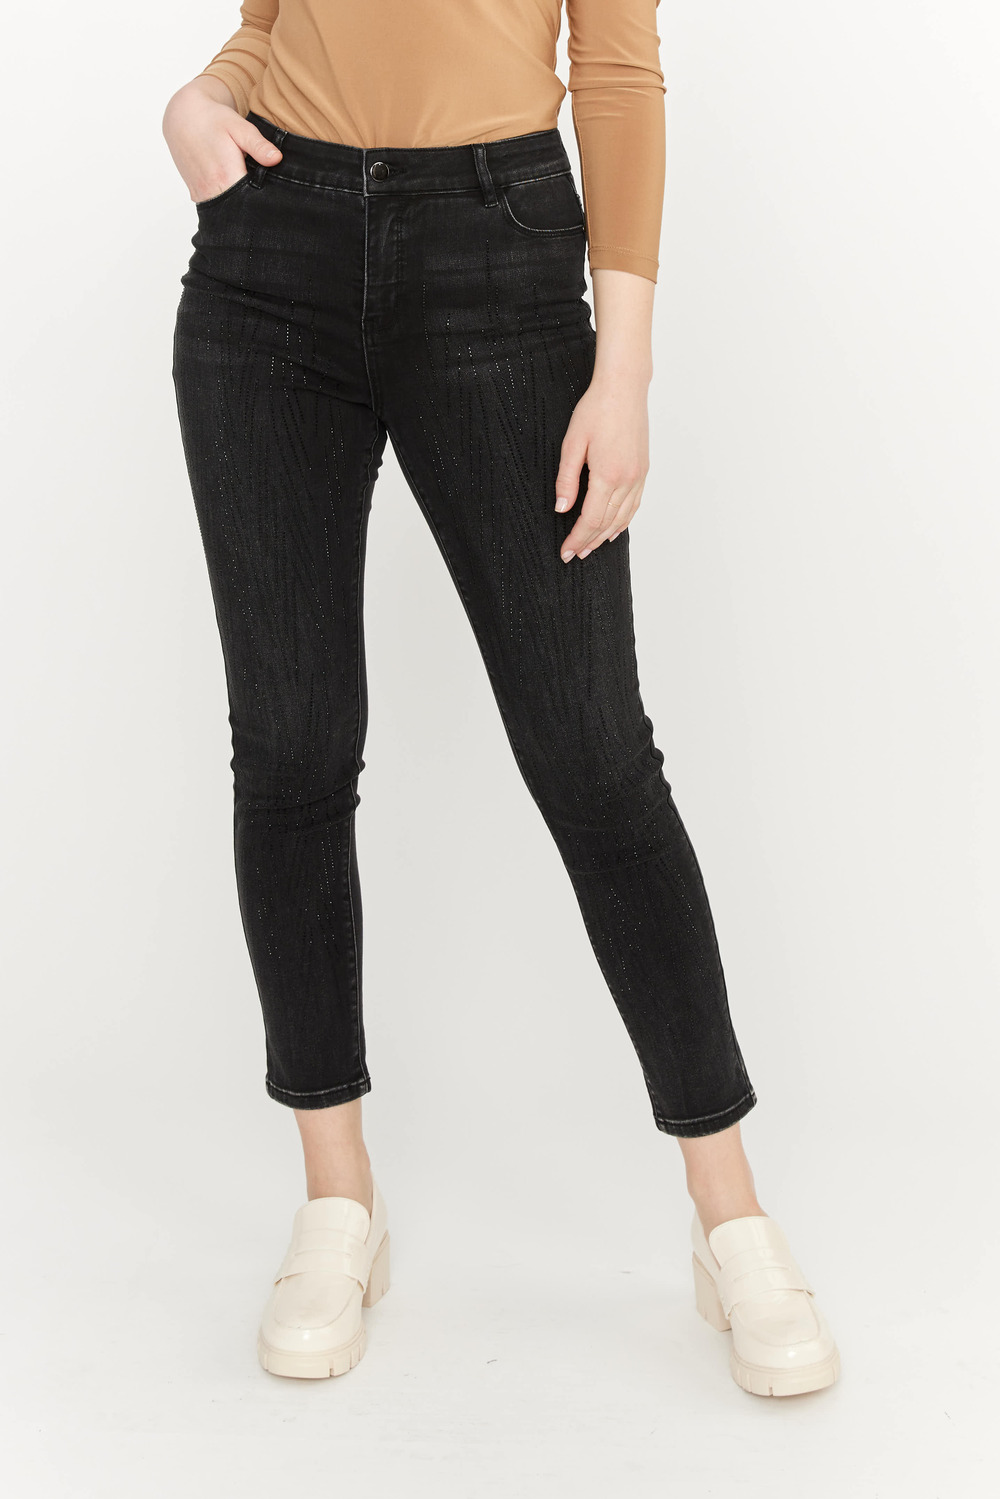 Beaded Slim Leg Jeans Style 233872U. Black